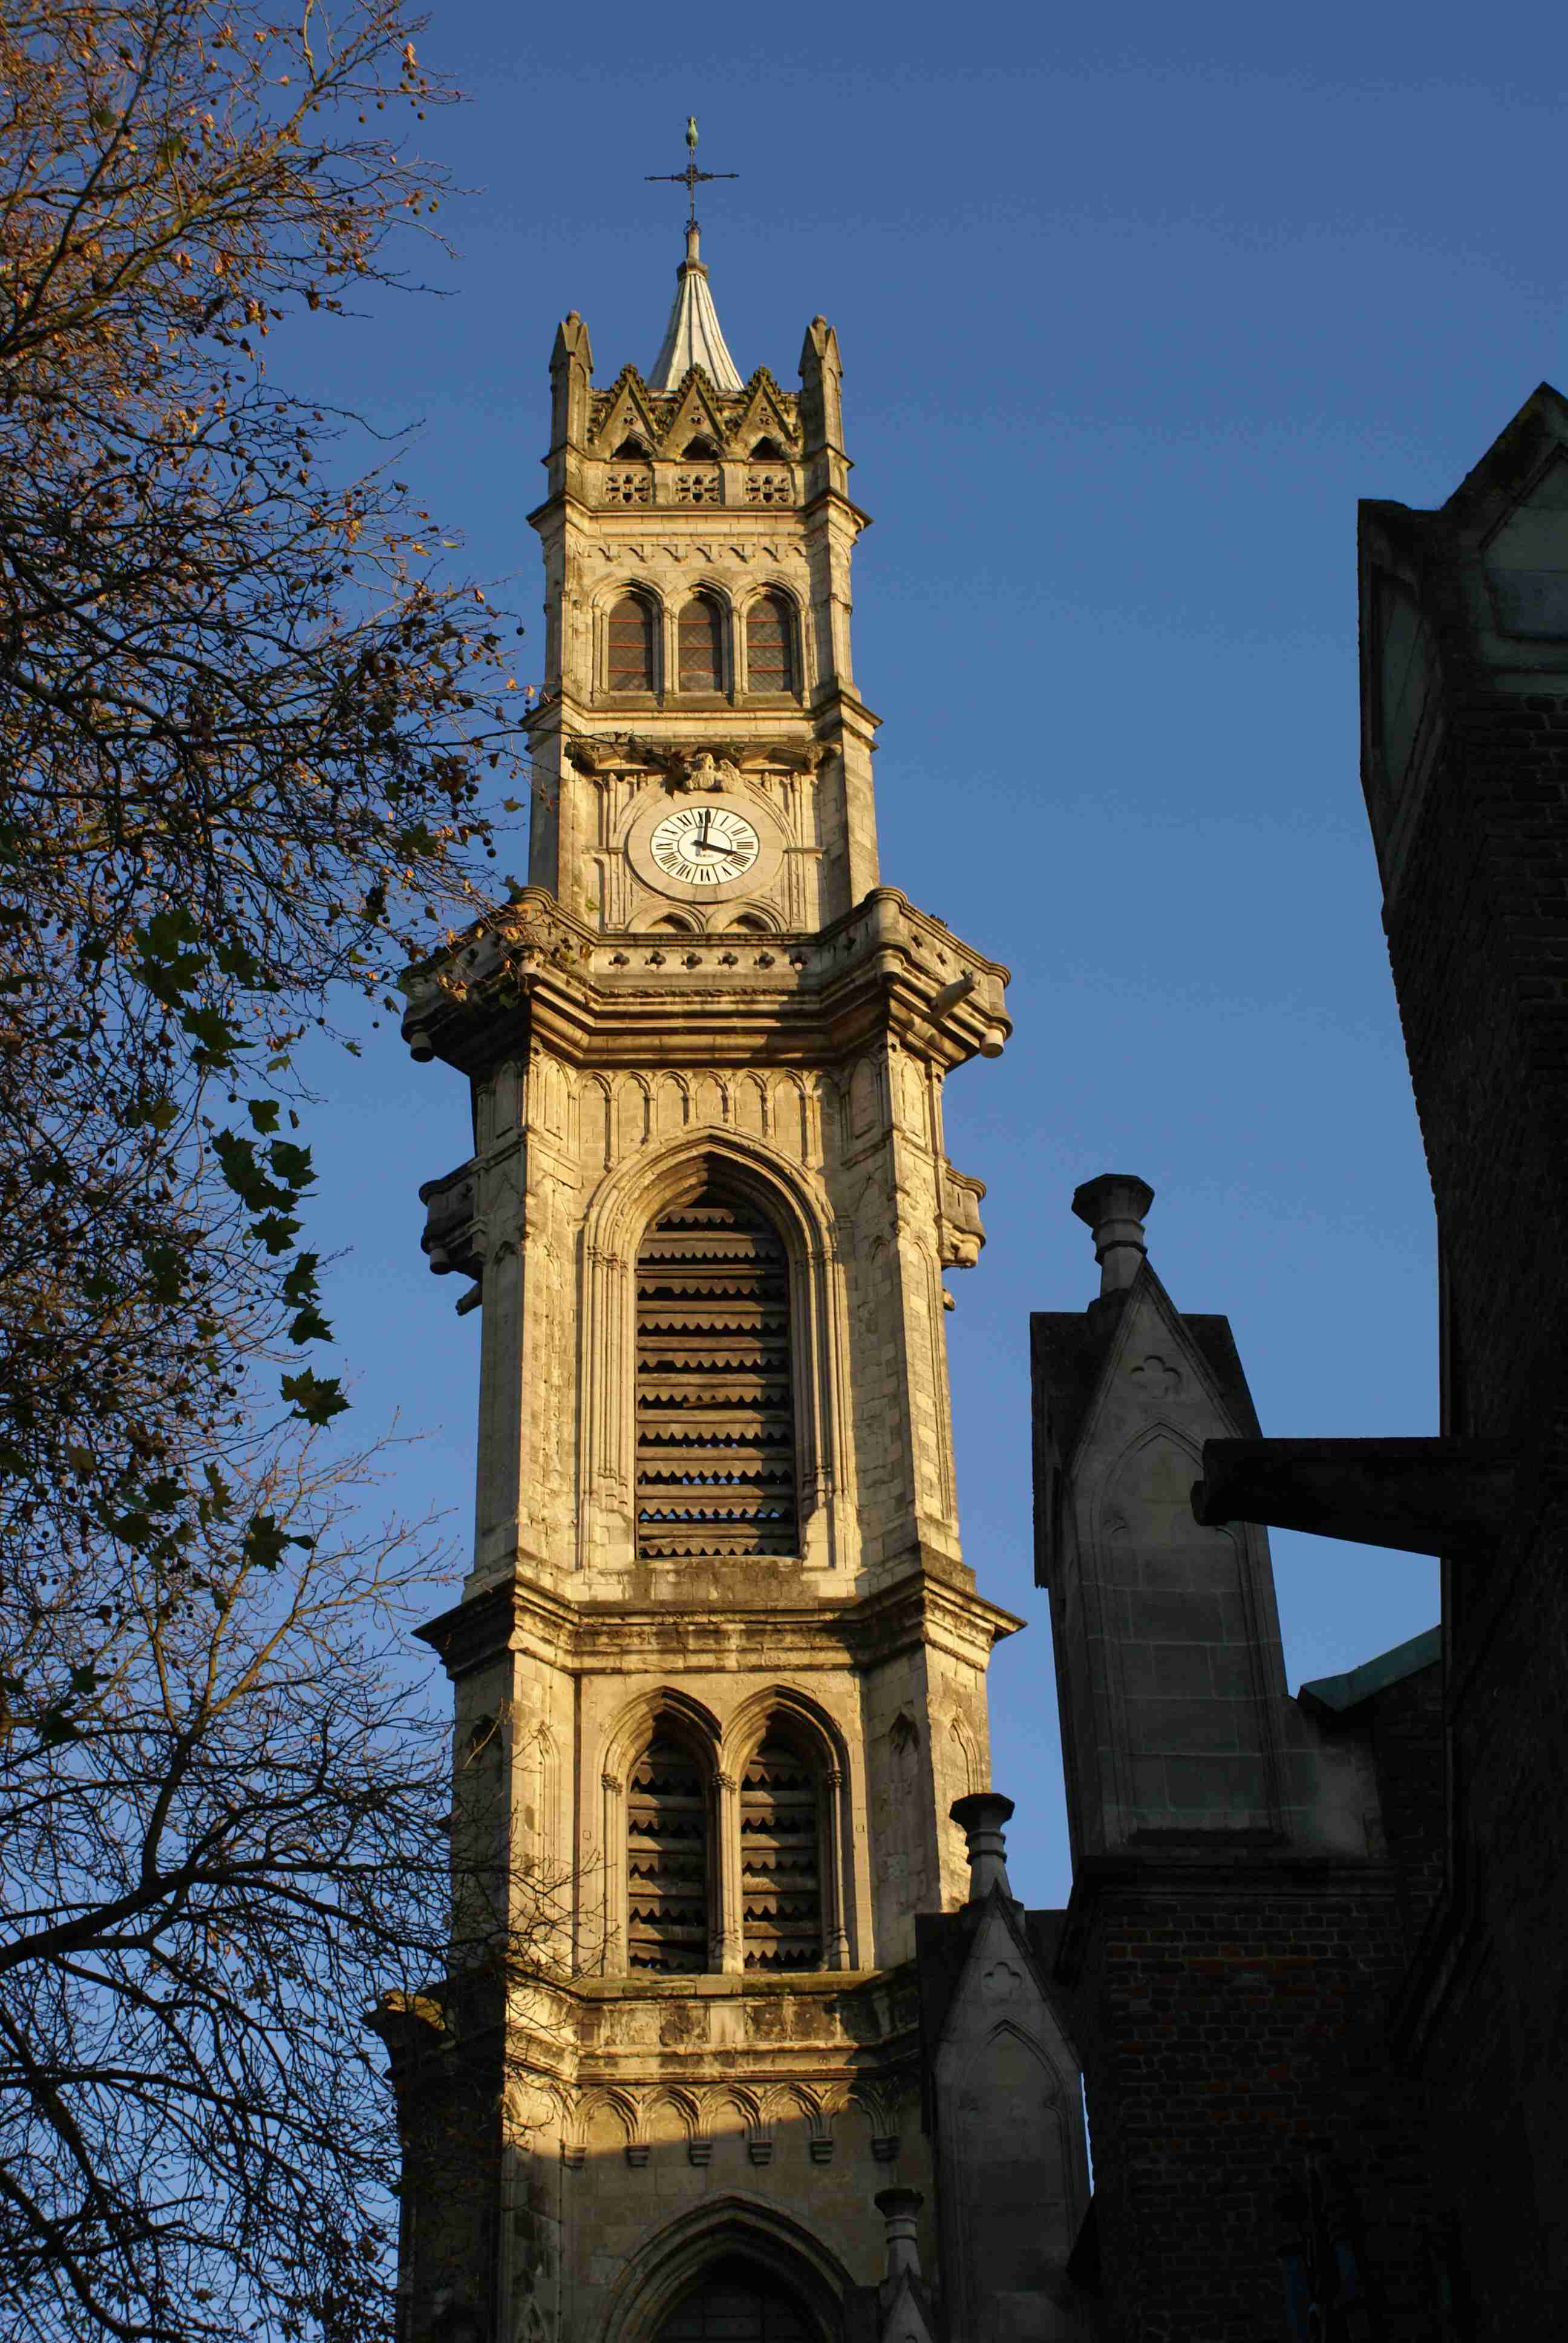 Le clocher de l'Eglise qui culmine sur la ville